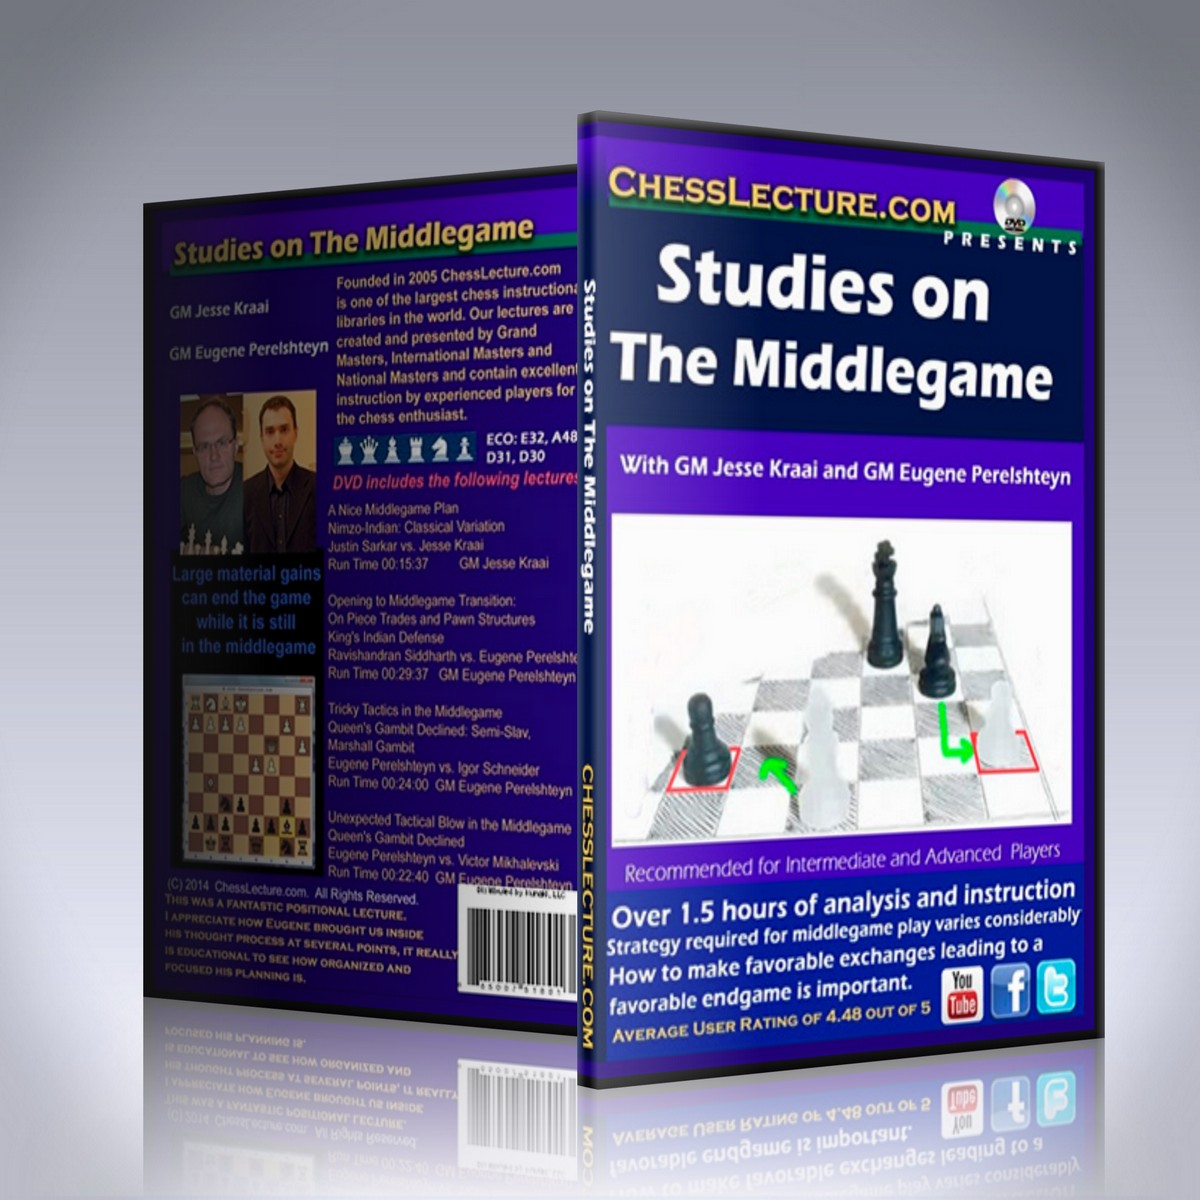 Studies on The Middlegame – GM Jesse Kraai and GM Eugene Perelshteyn